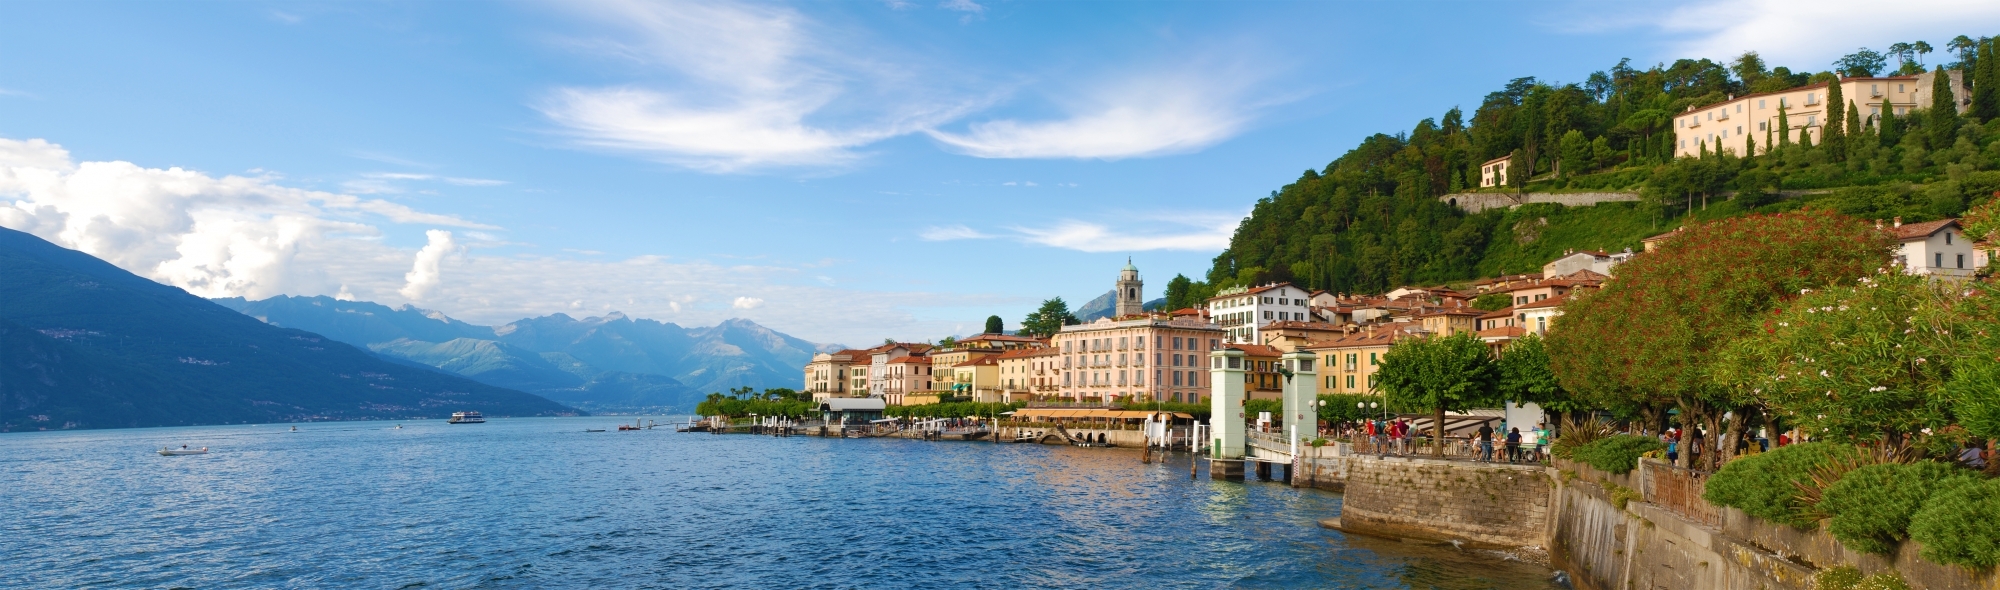 Noleggio Auto Sportive a Lago di Como